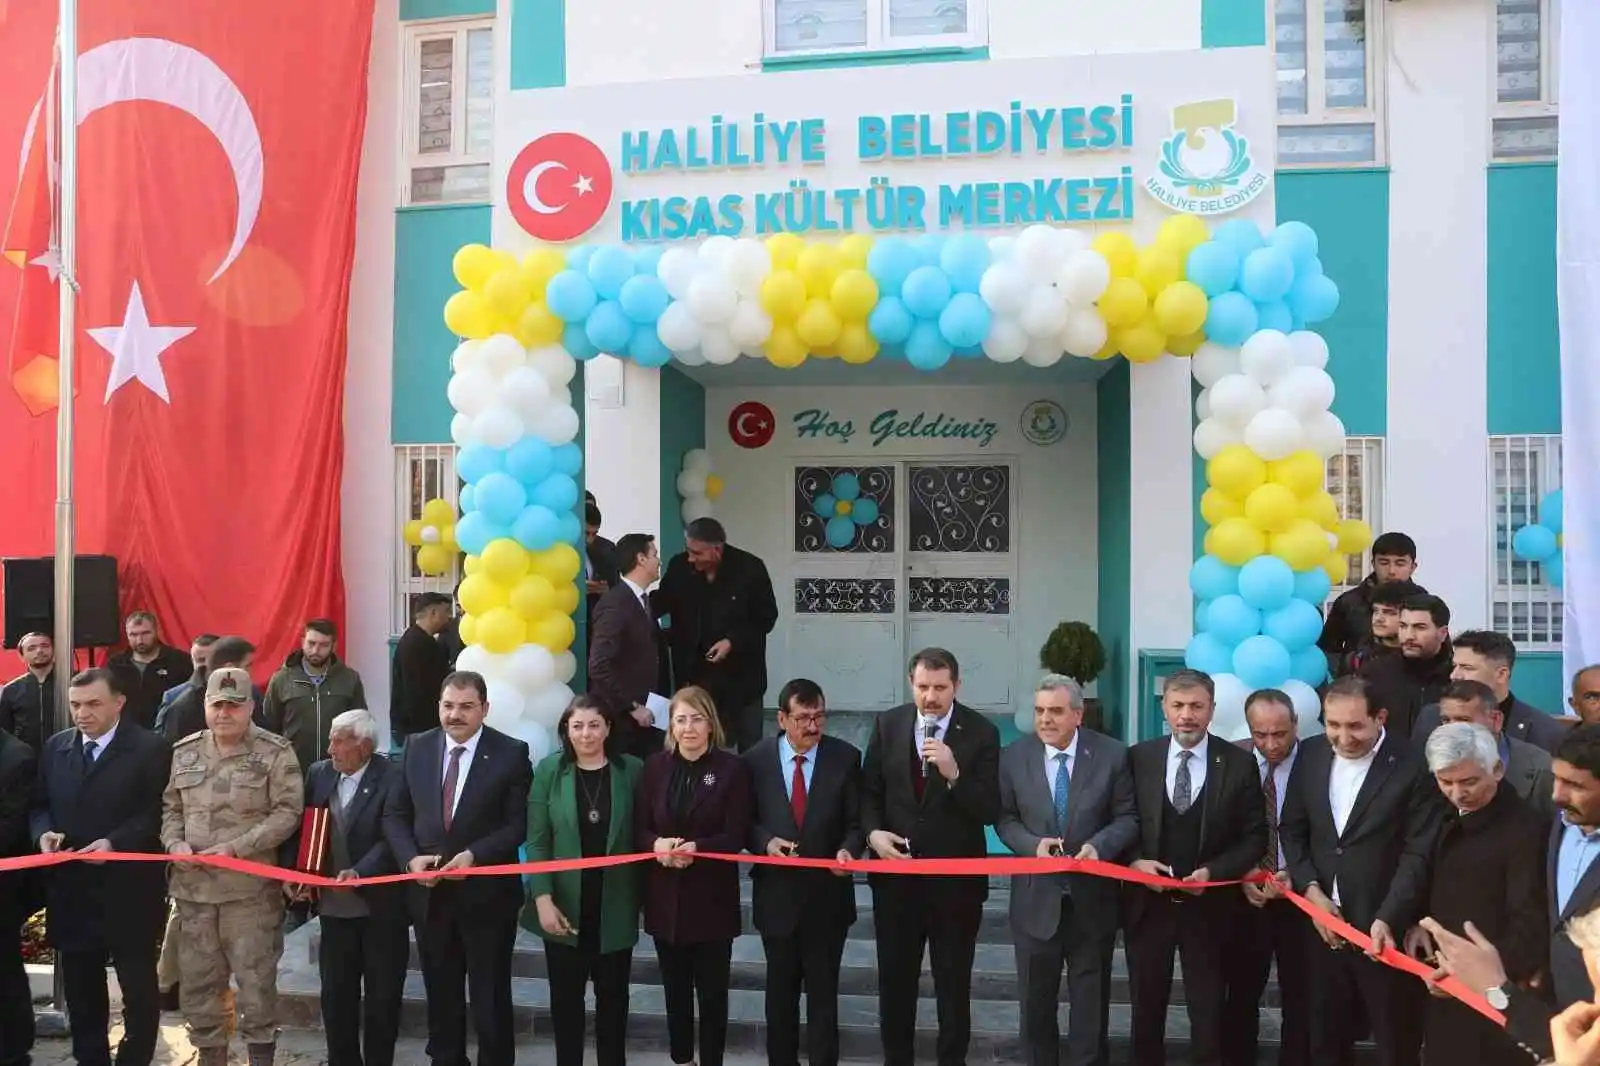 Haliliye’de Kısas Kültür Merkezinin açılışı gerçekleşti
